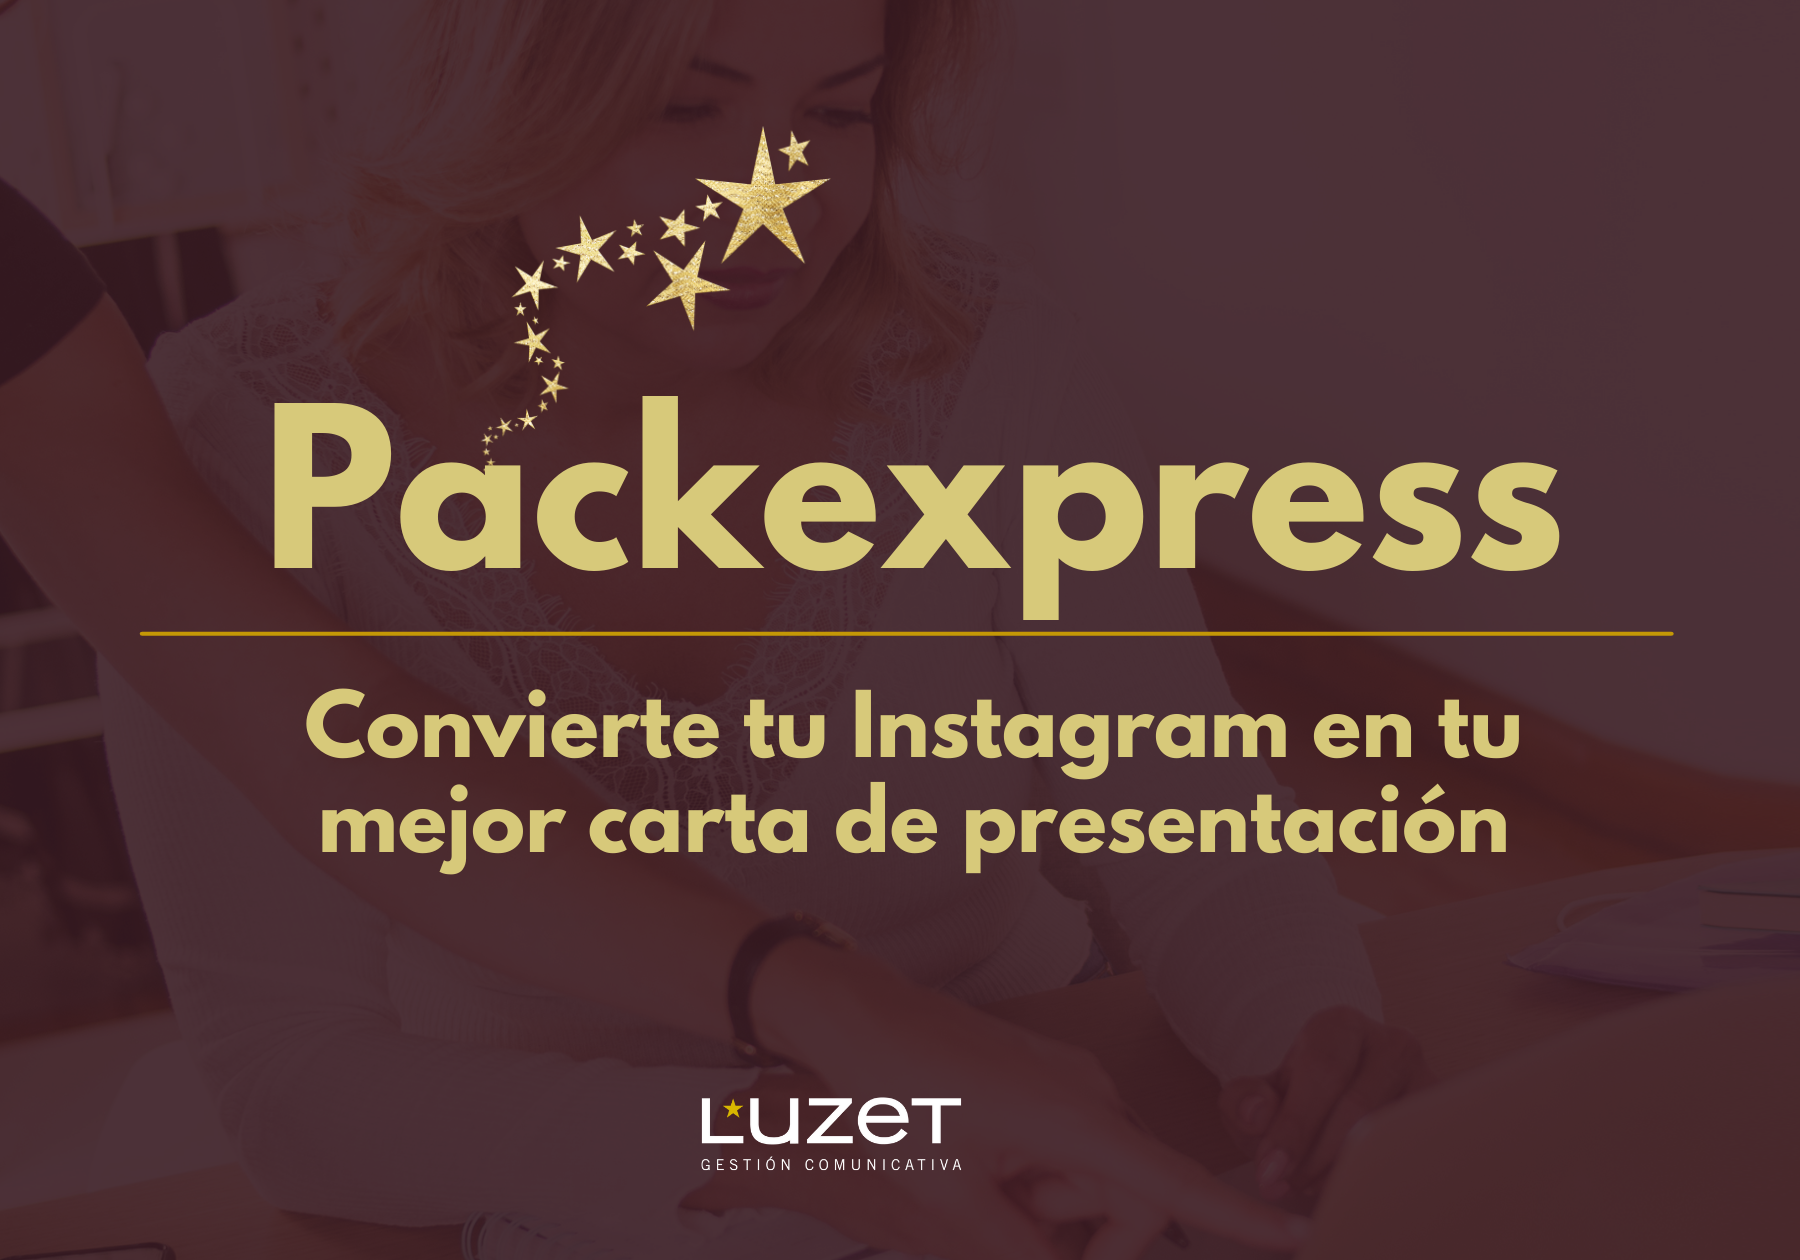 Packexpress Luzet Gestión Comunicativa